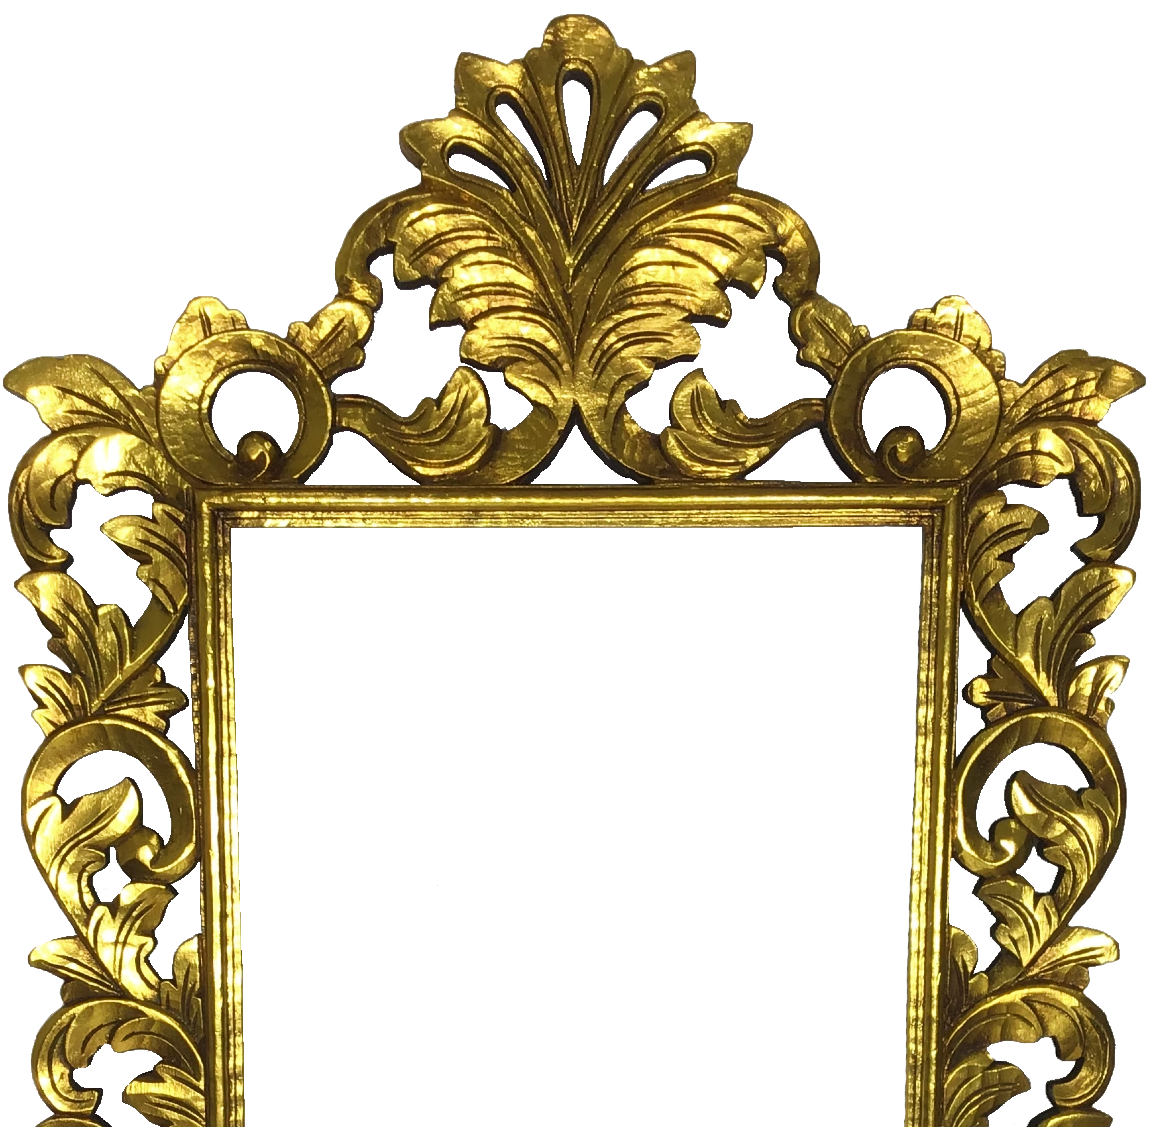 Marco de espejo tallado 140cm x 80cm 